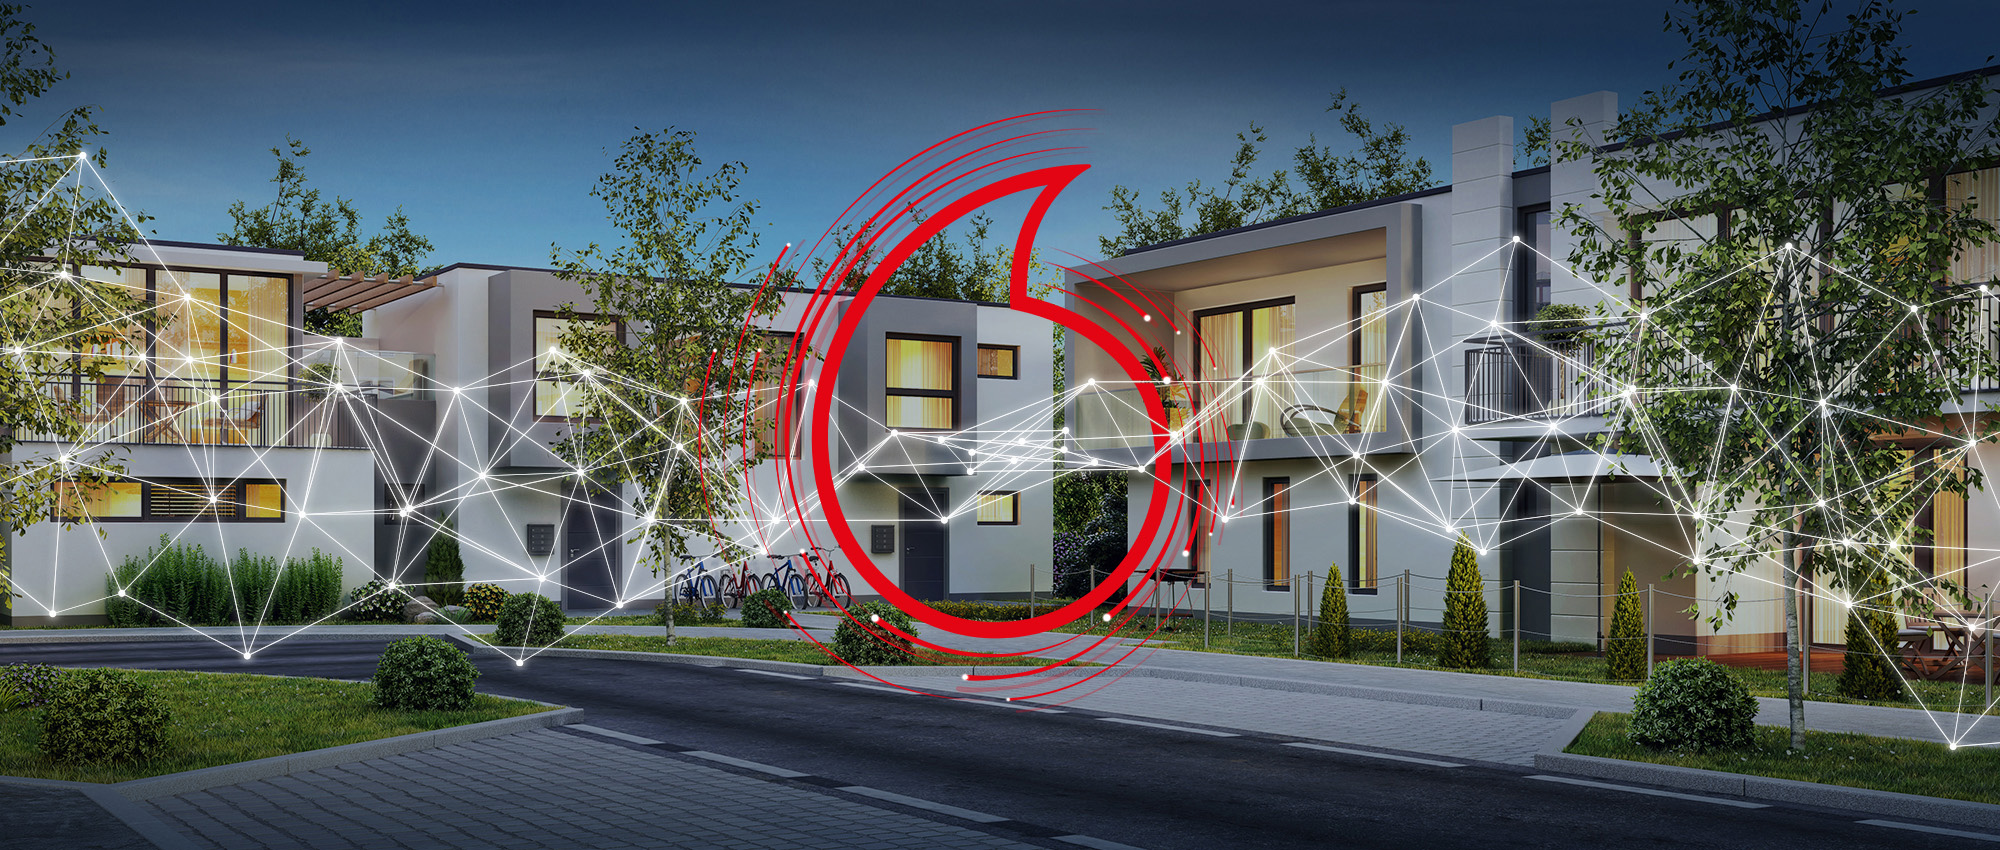 Gebäudekonnektivität 4.0 – ganzheitlich vernetzen und digitalisieren